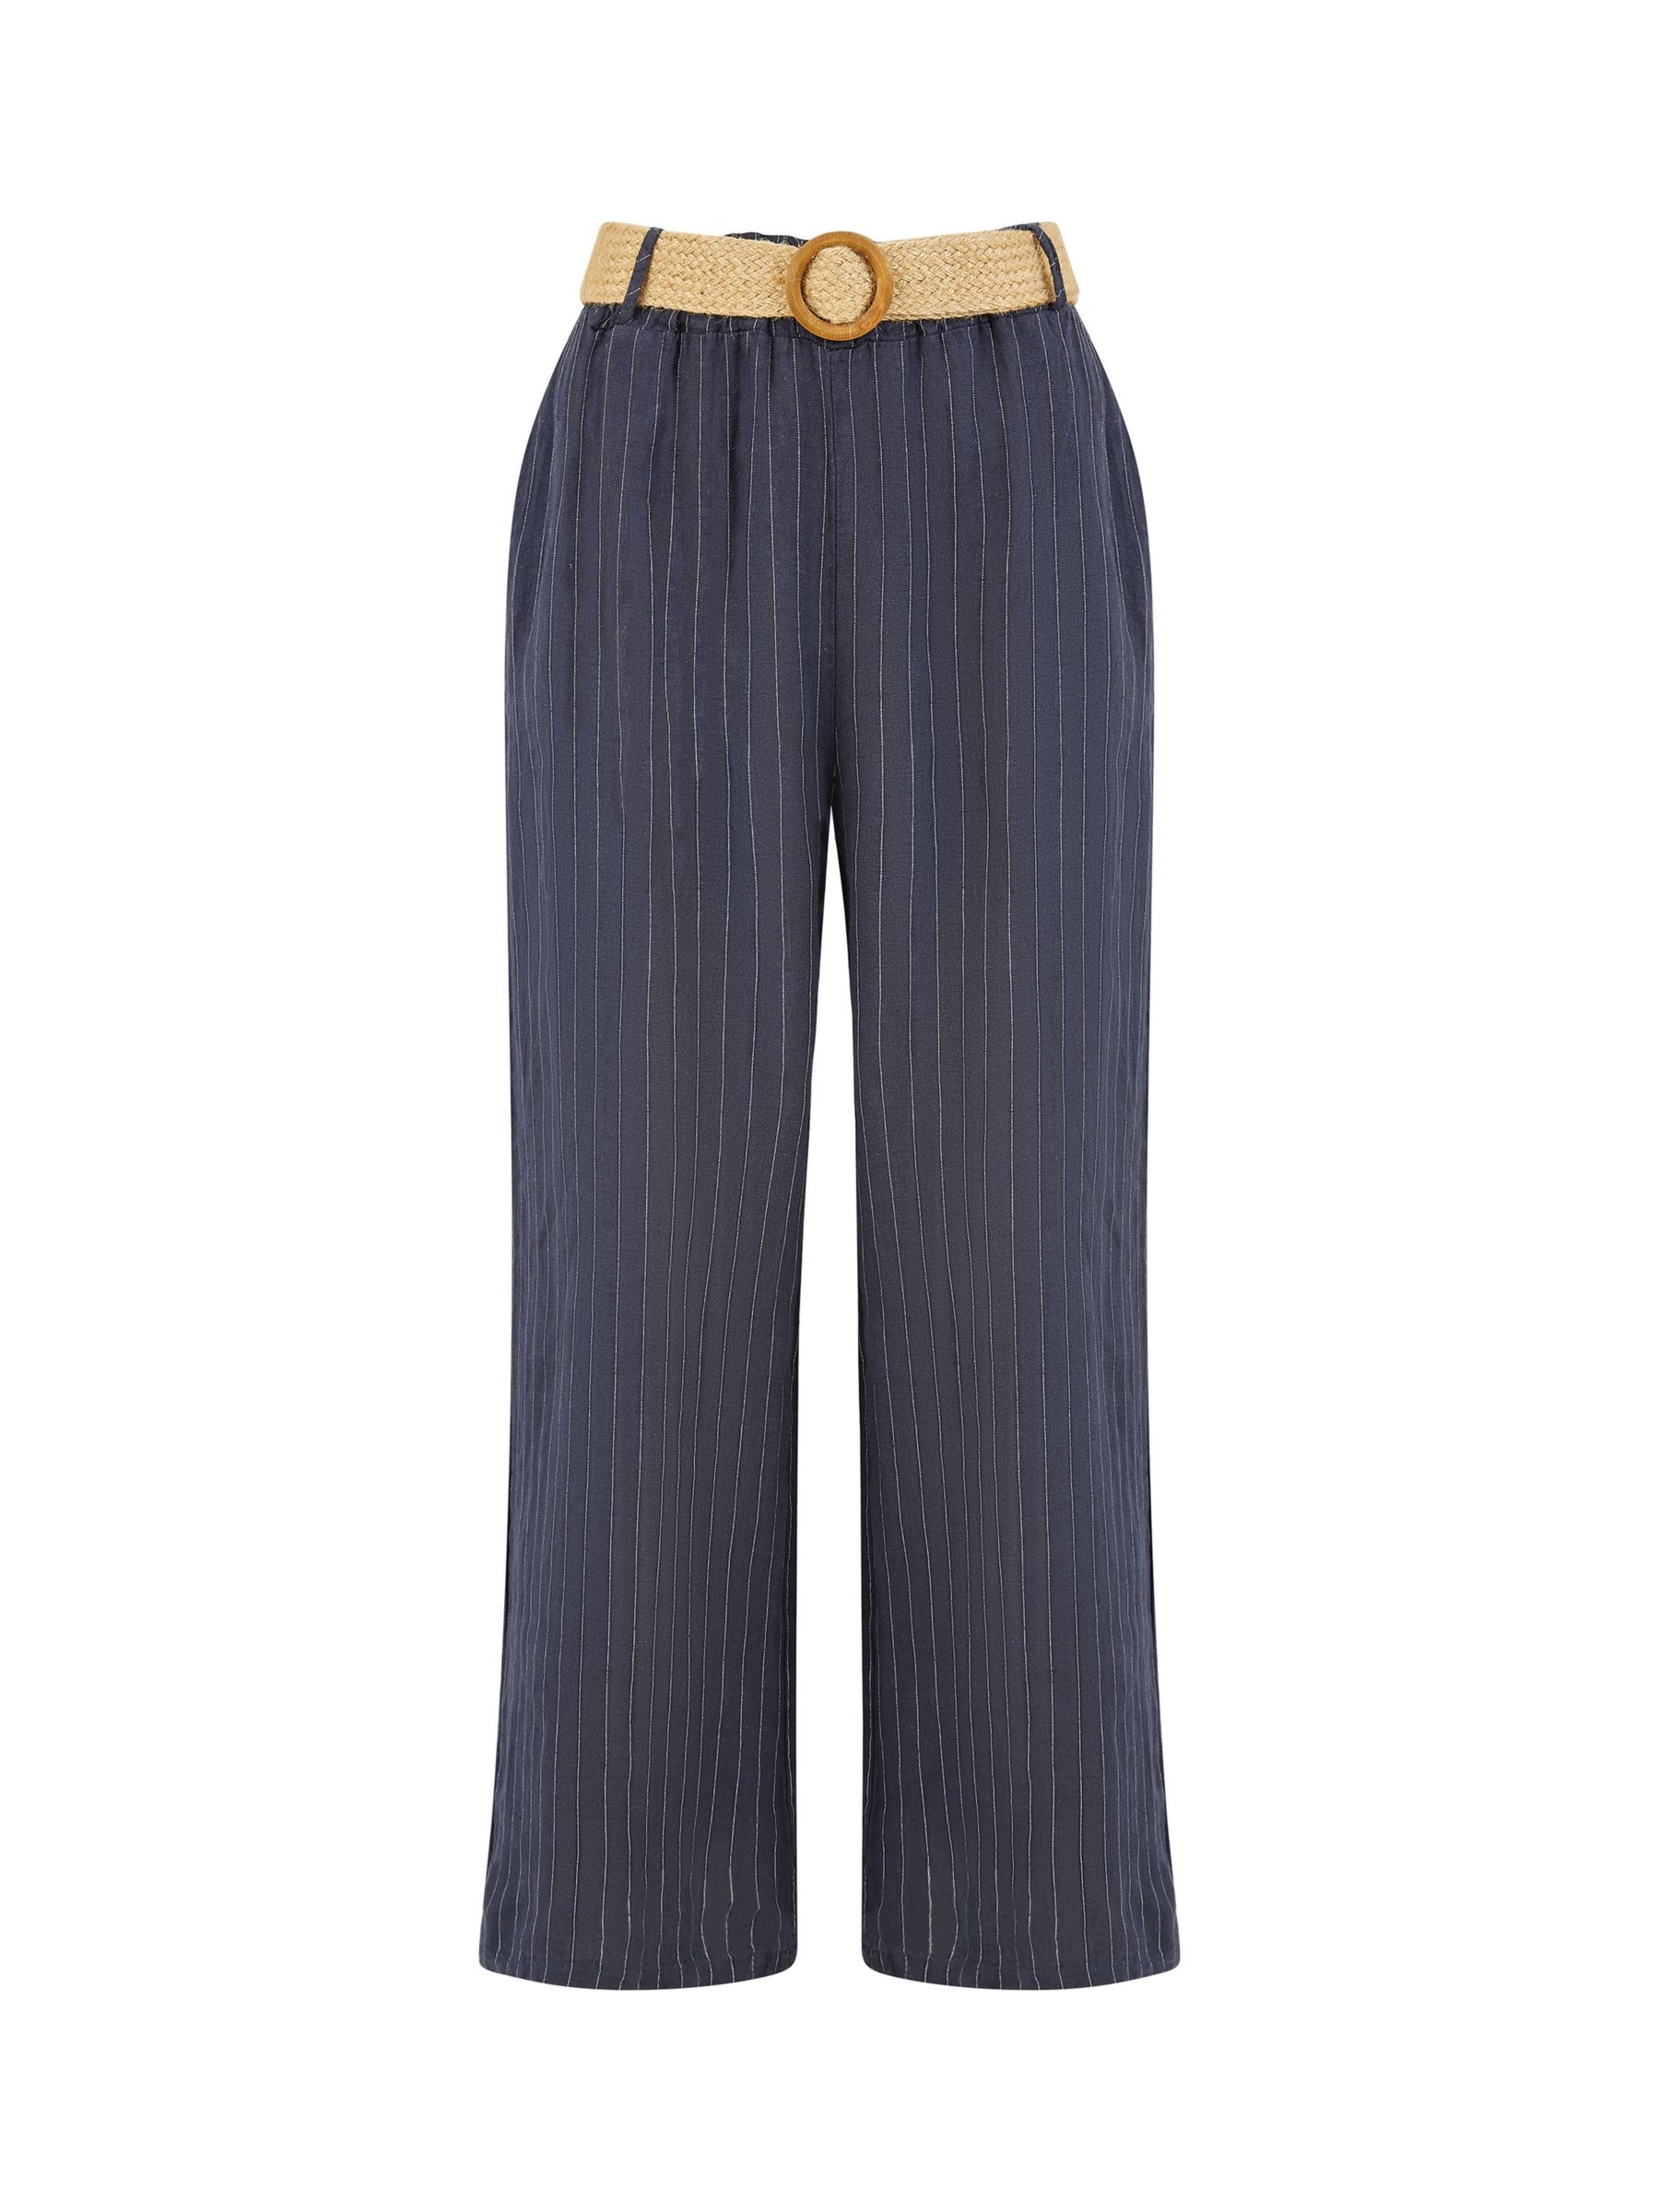 Yumi Italian Linen Striped Wide Leg Trousers & Belt, Navy, S